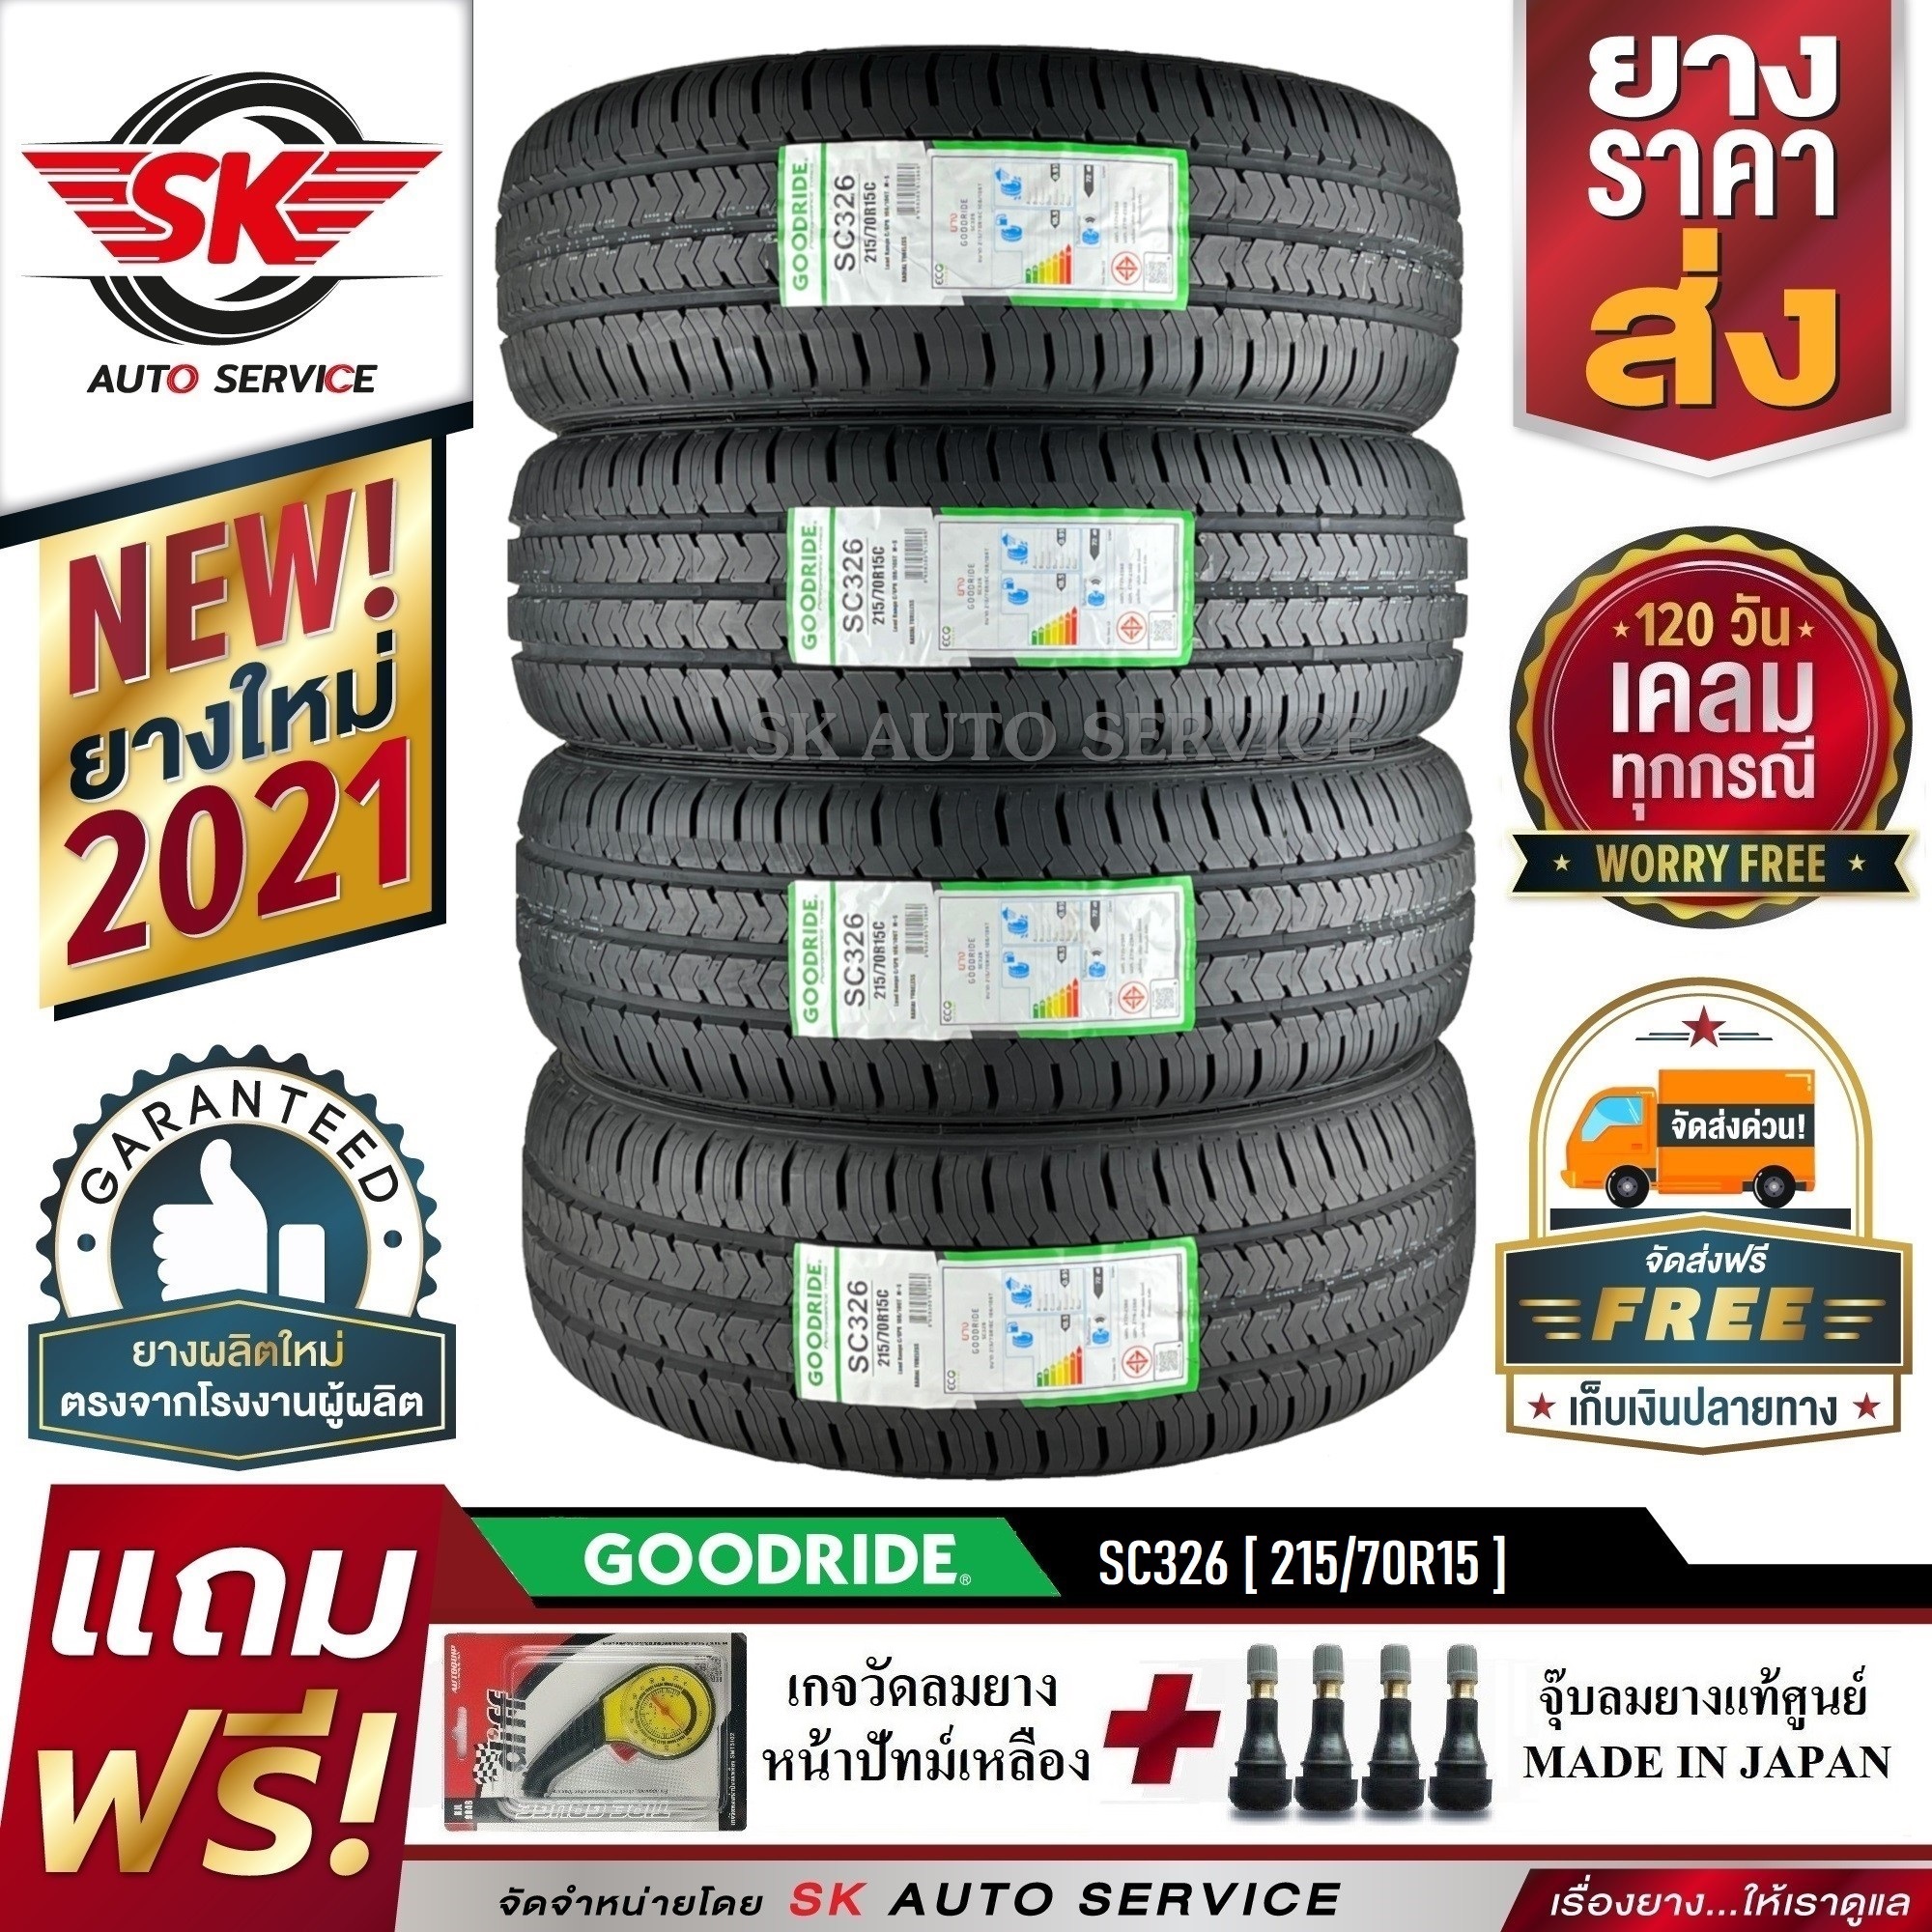 GOODRIDE (ยางสัญชาติไทย) 215/70R15 (กระบะขอบ15) รุ่น SC326 4 เส้น (ยางใหม่กริ๊ปปี 2021)